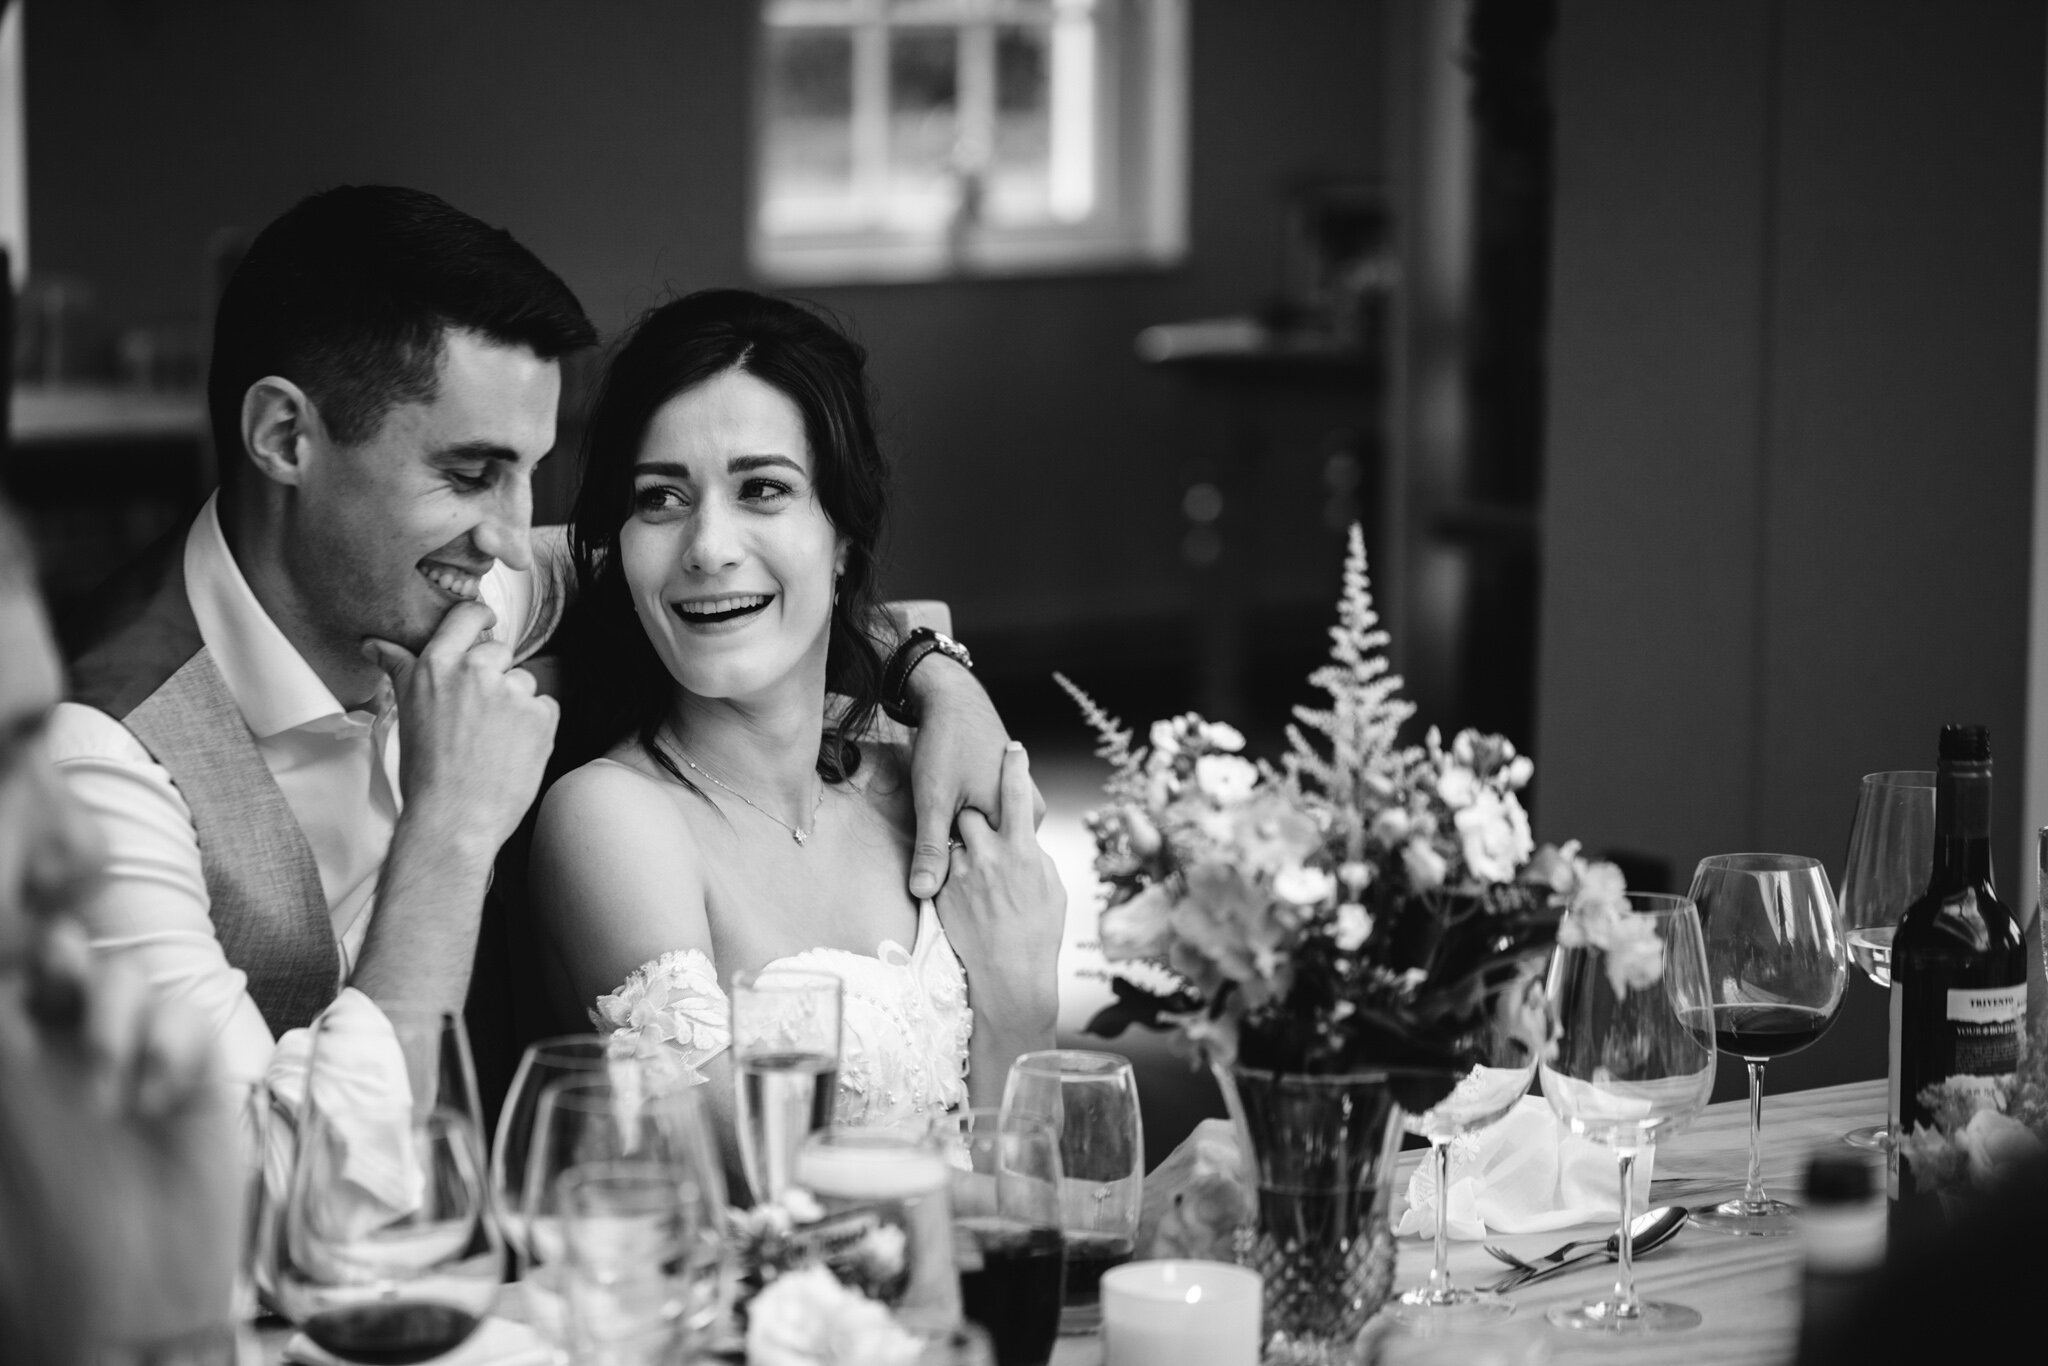 derbyshire-wedding-elopement-photographer-best-2020-16.jpg